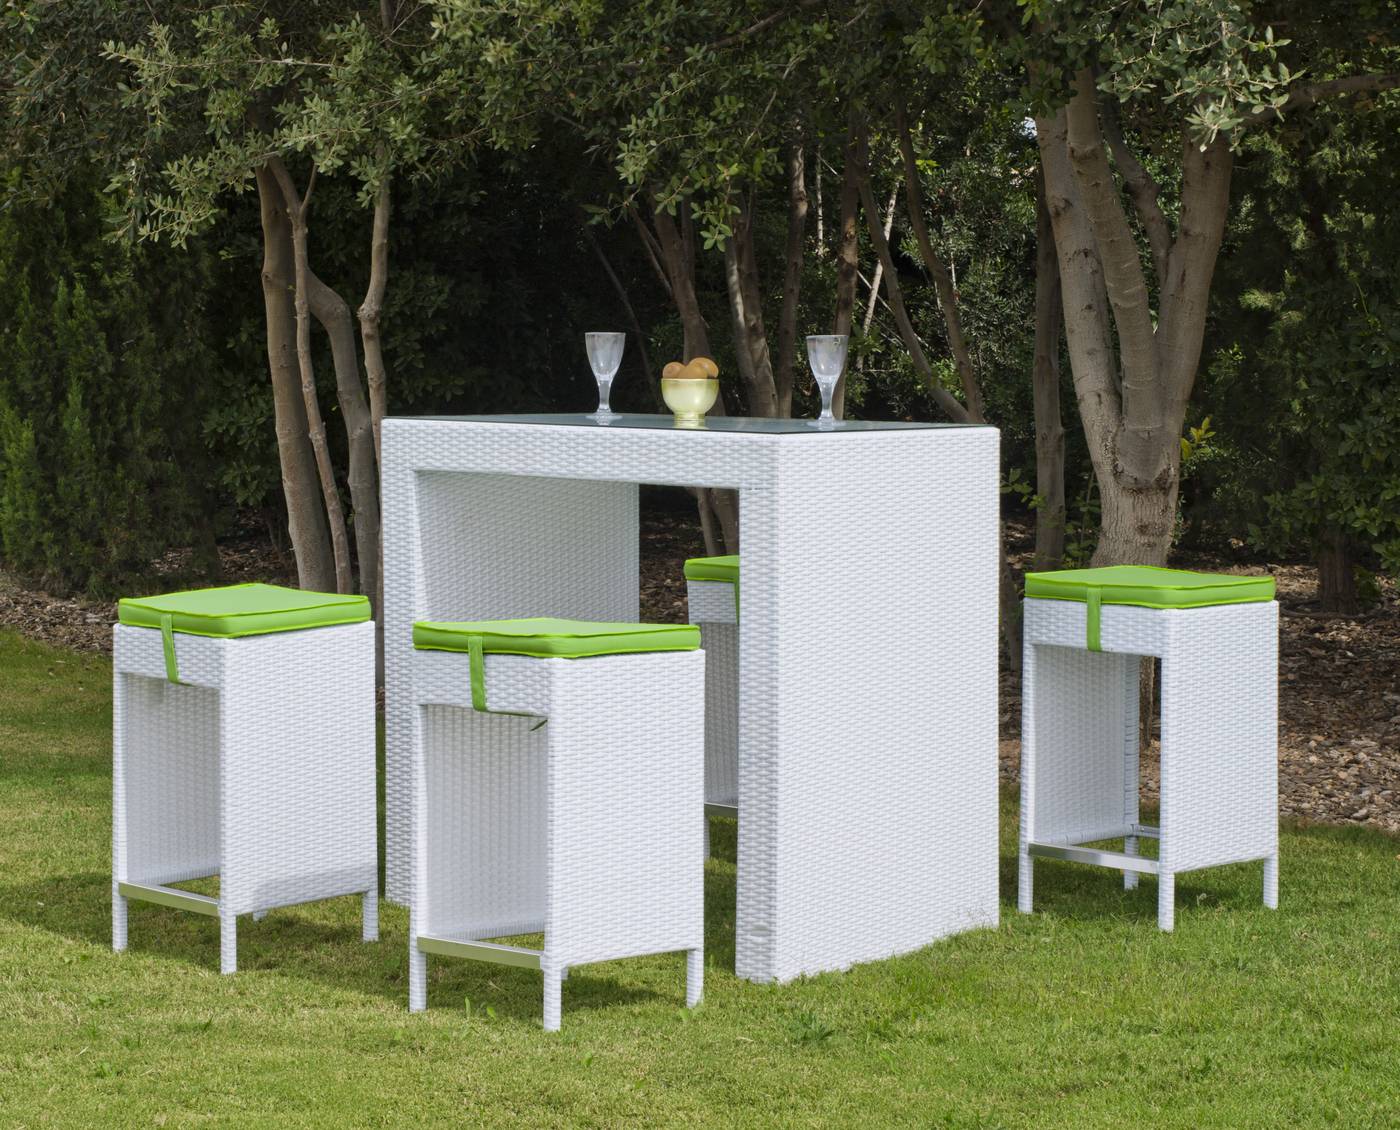 Conjunto para jardín de ratán sintético color blanco: mesa bar con tapa de cristal templado y 4 taburetes con cojines